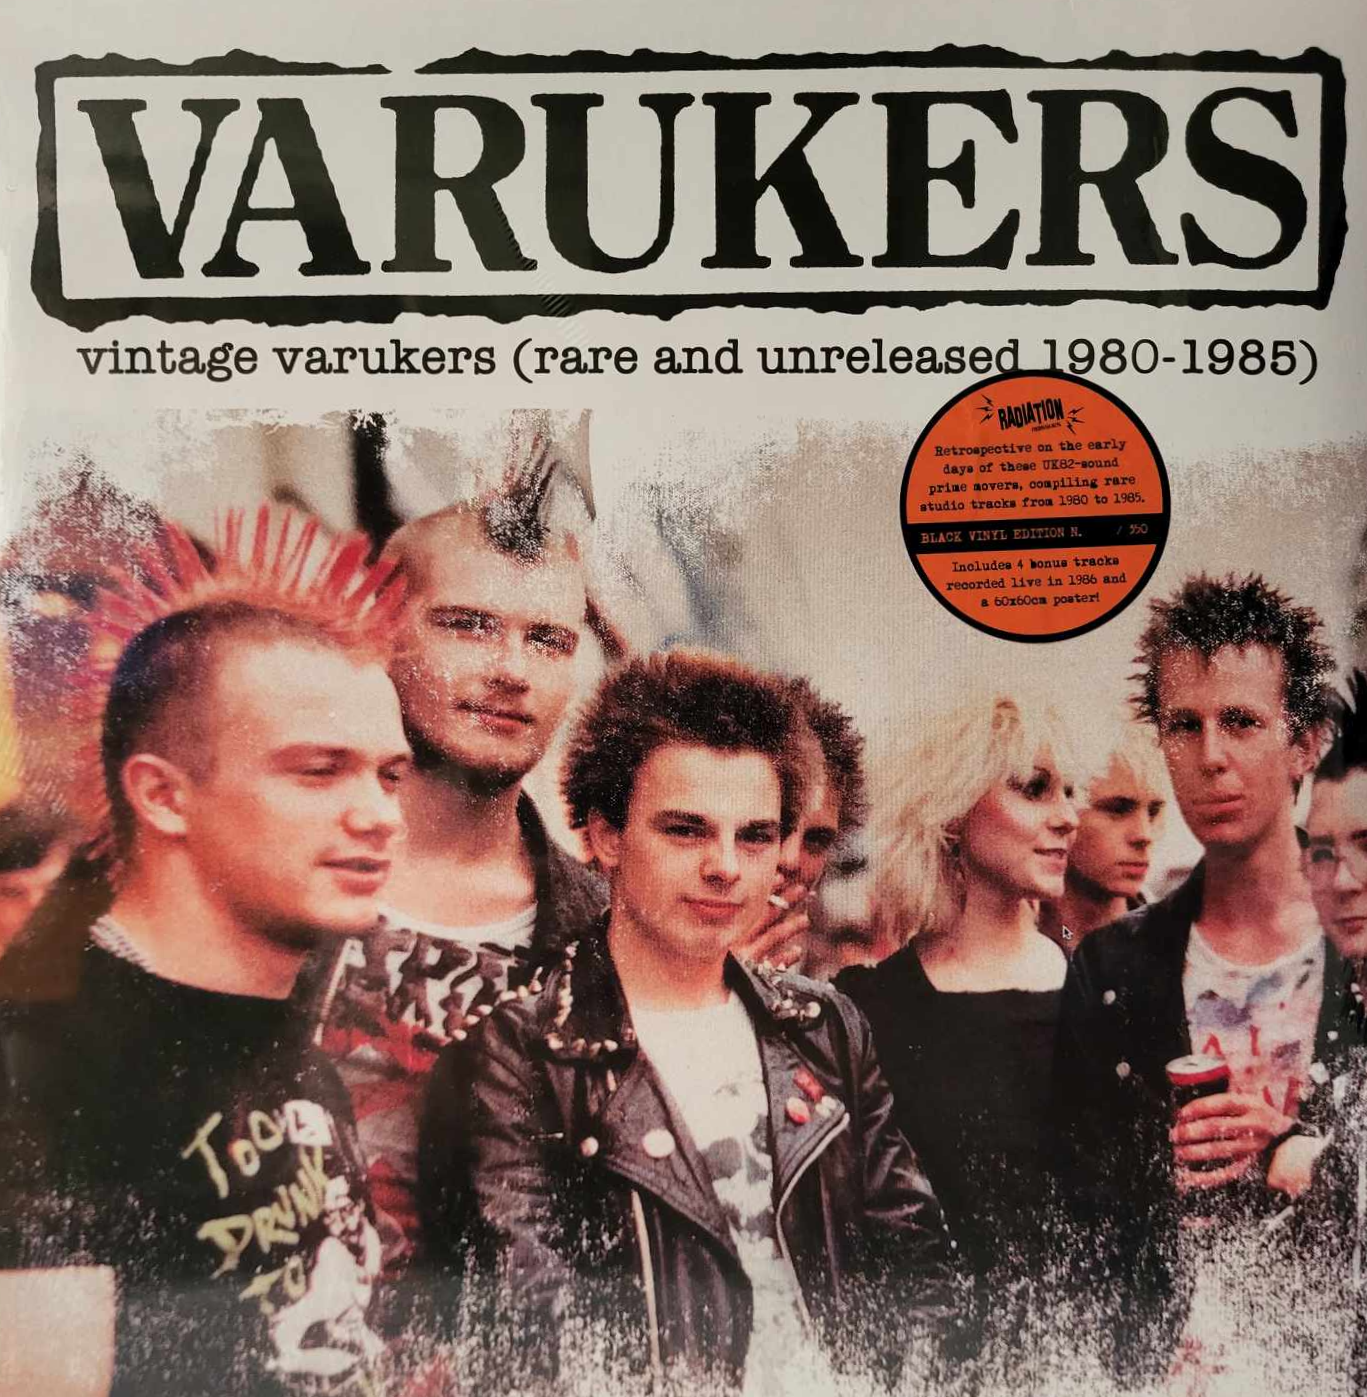 VINTAGE VARUKERS - RARE AND UNRELEASED 1980-1985